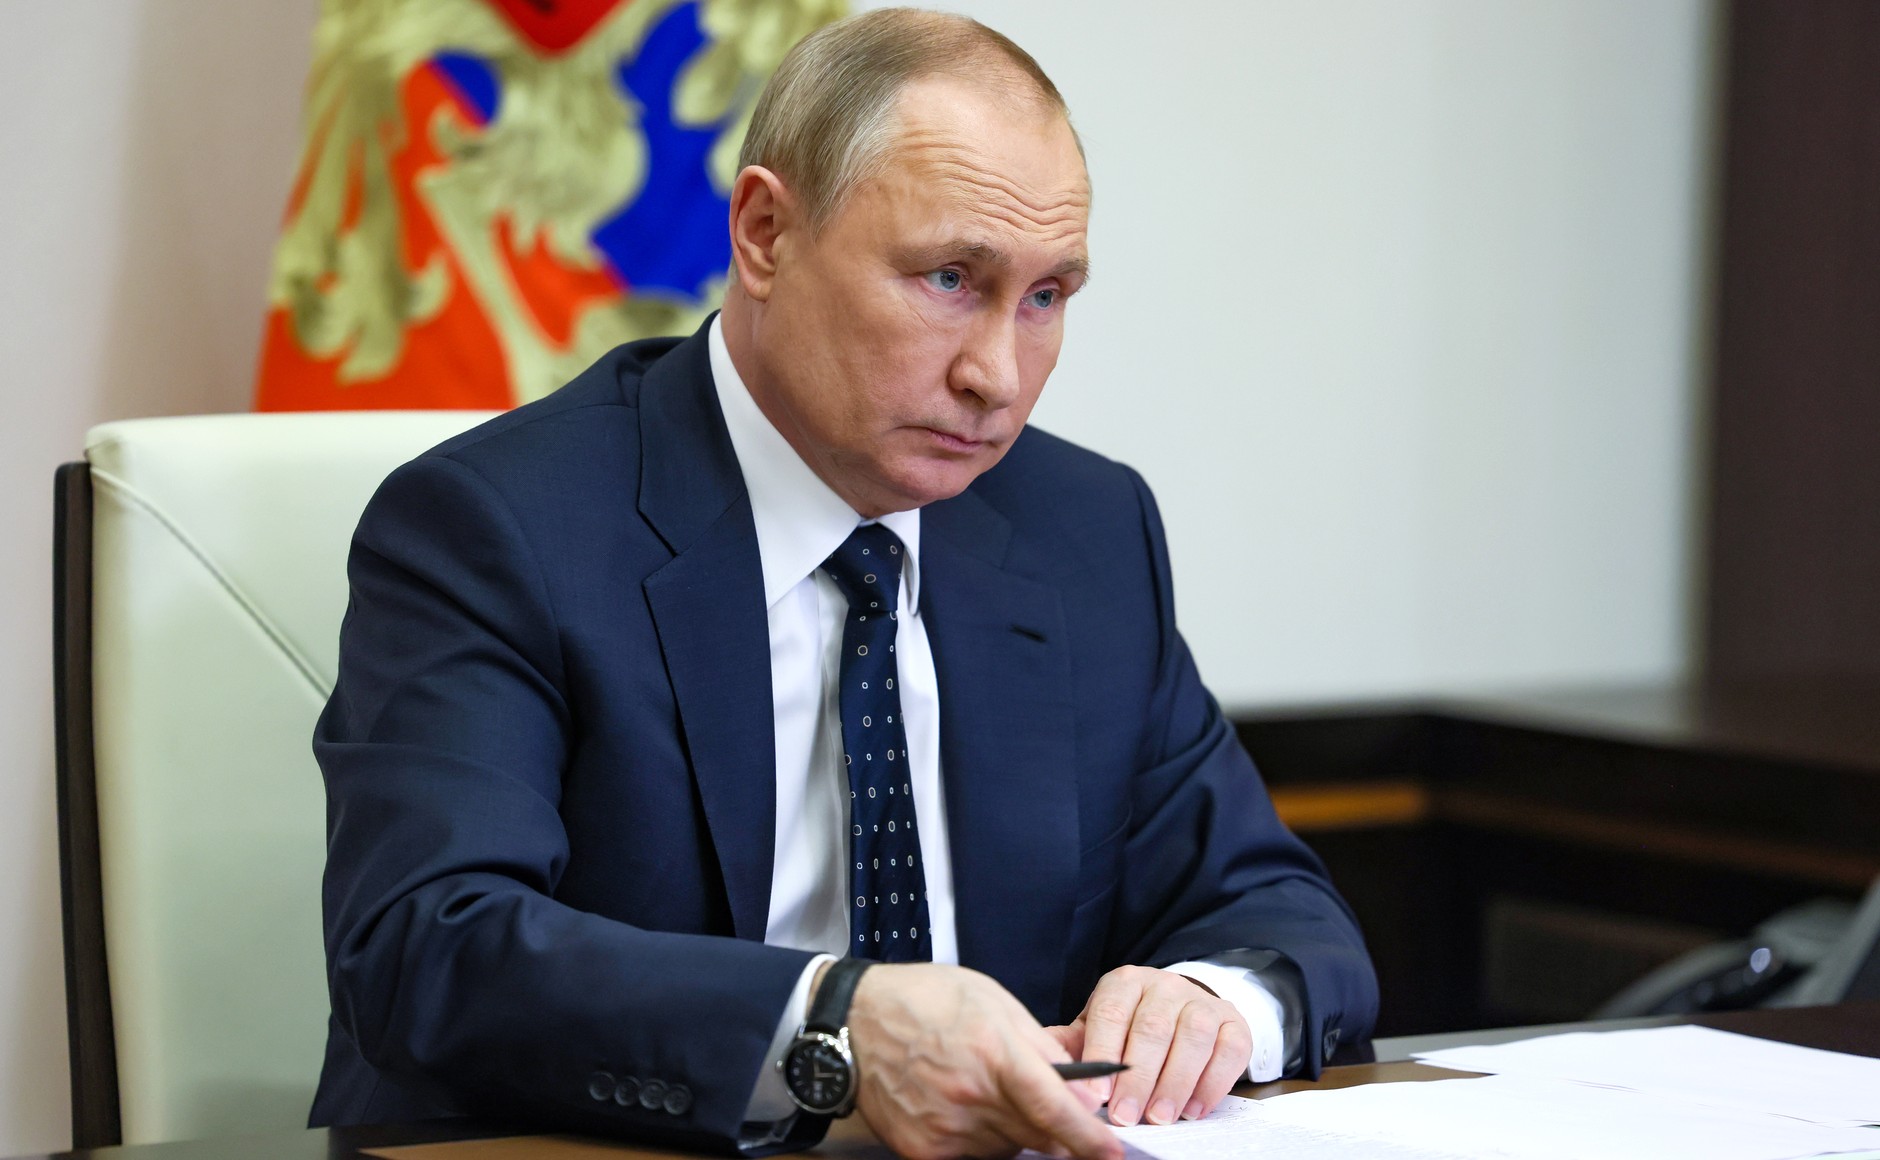 kreml poprvé reagoval na obvinění, že putin může za smrt navalného